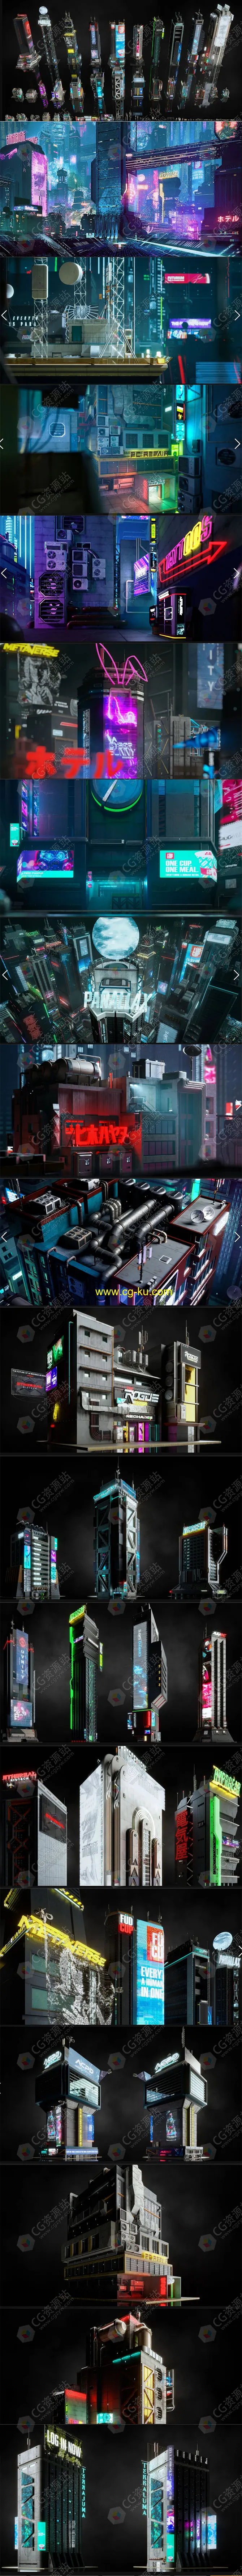 科幻赛博朋克城市建筑商店楼房小巷住宅3D模型C4D/FBX/OBJ/MAX/Maya/Blender/Houdini/Unity/Unreal格式的图片1